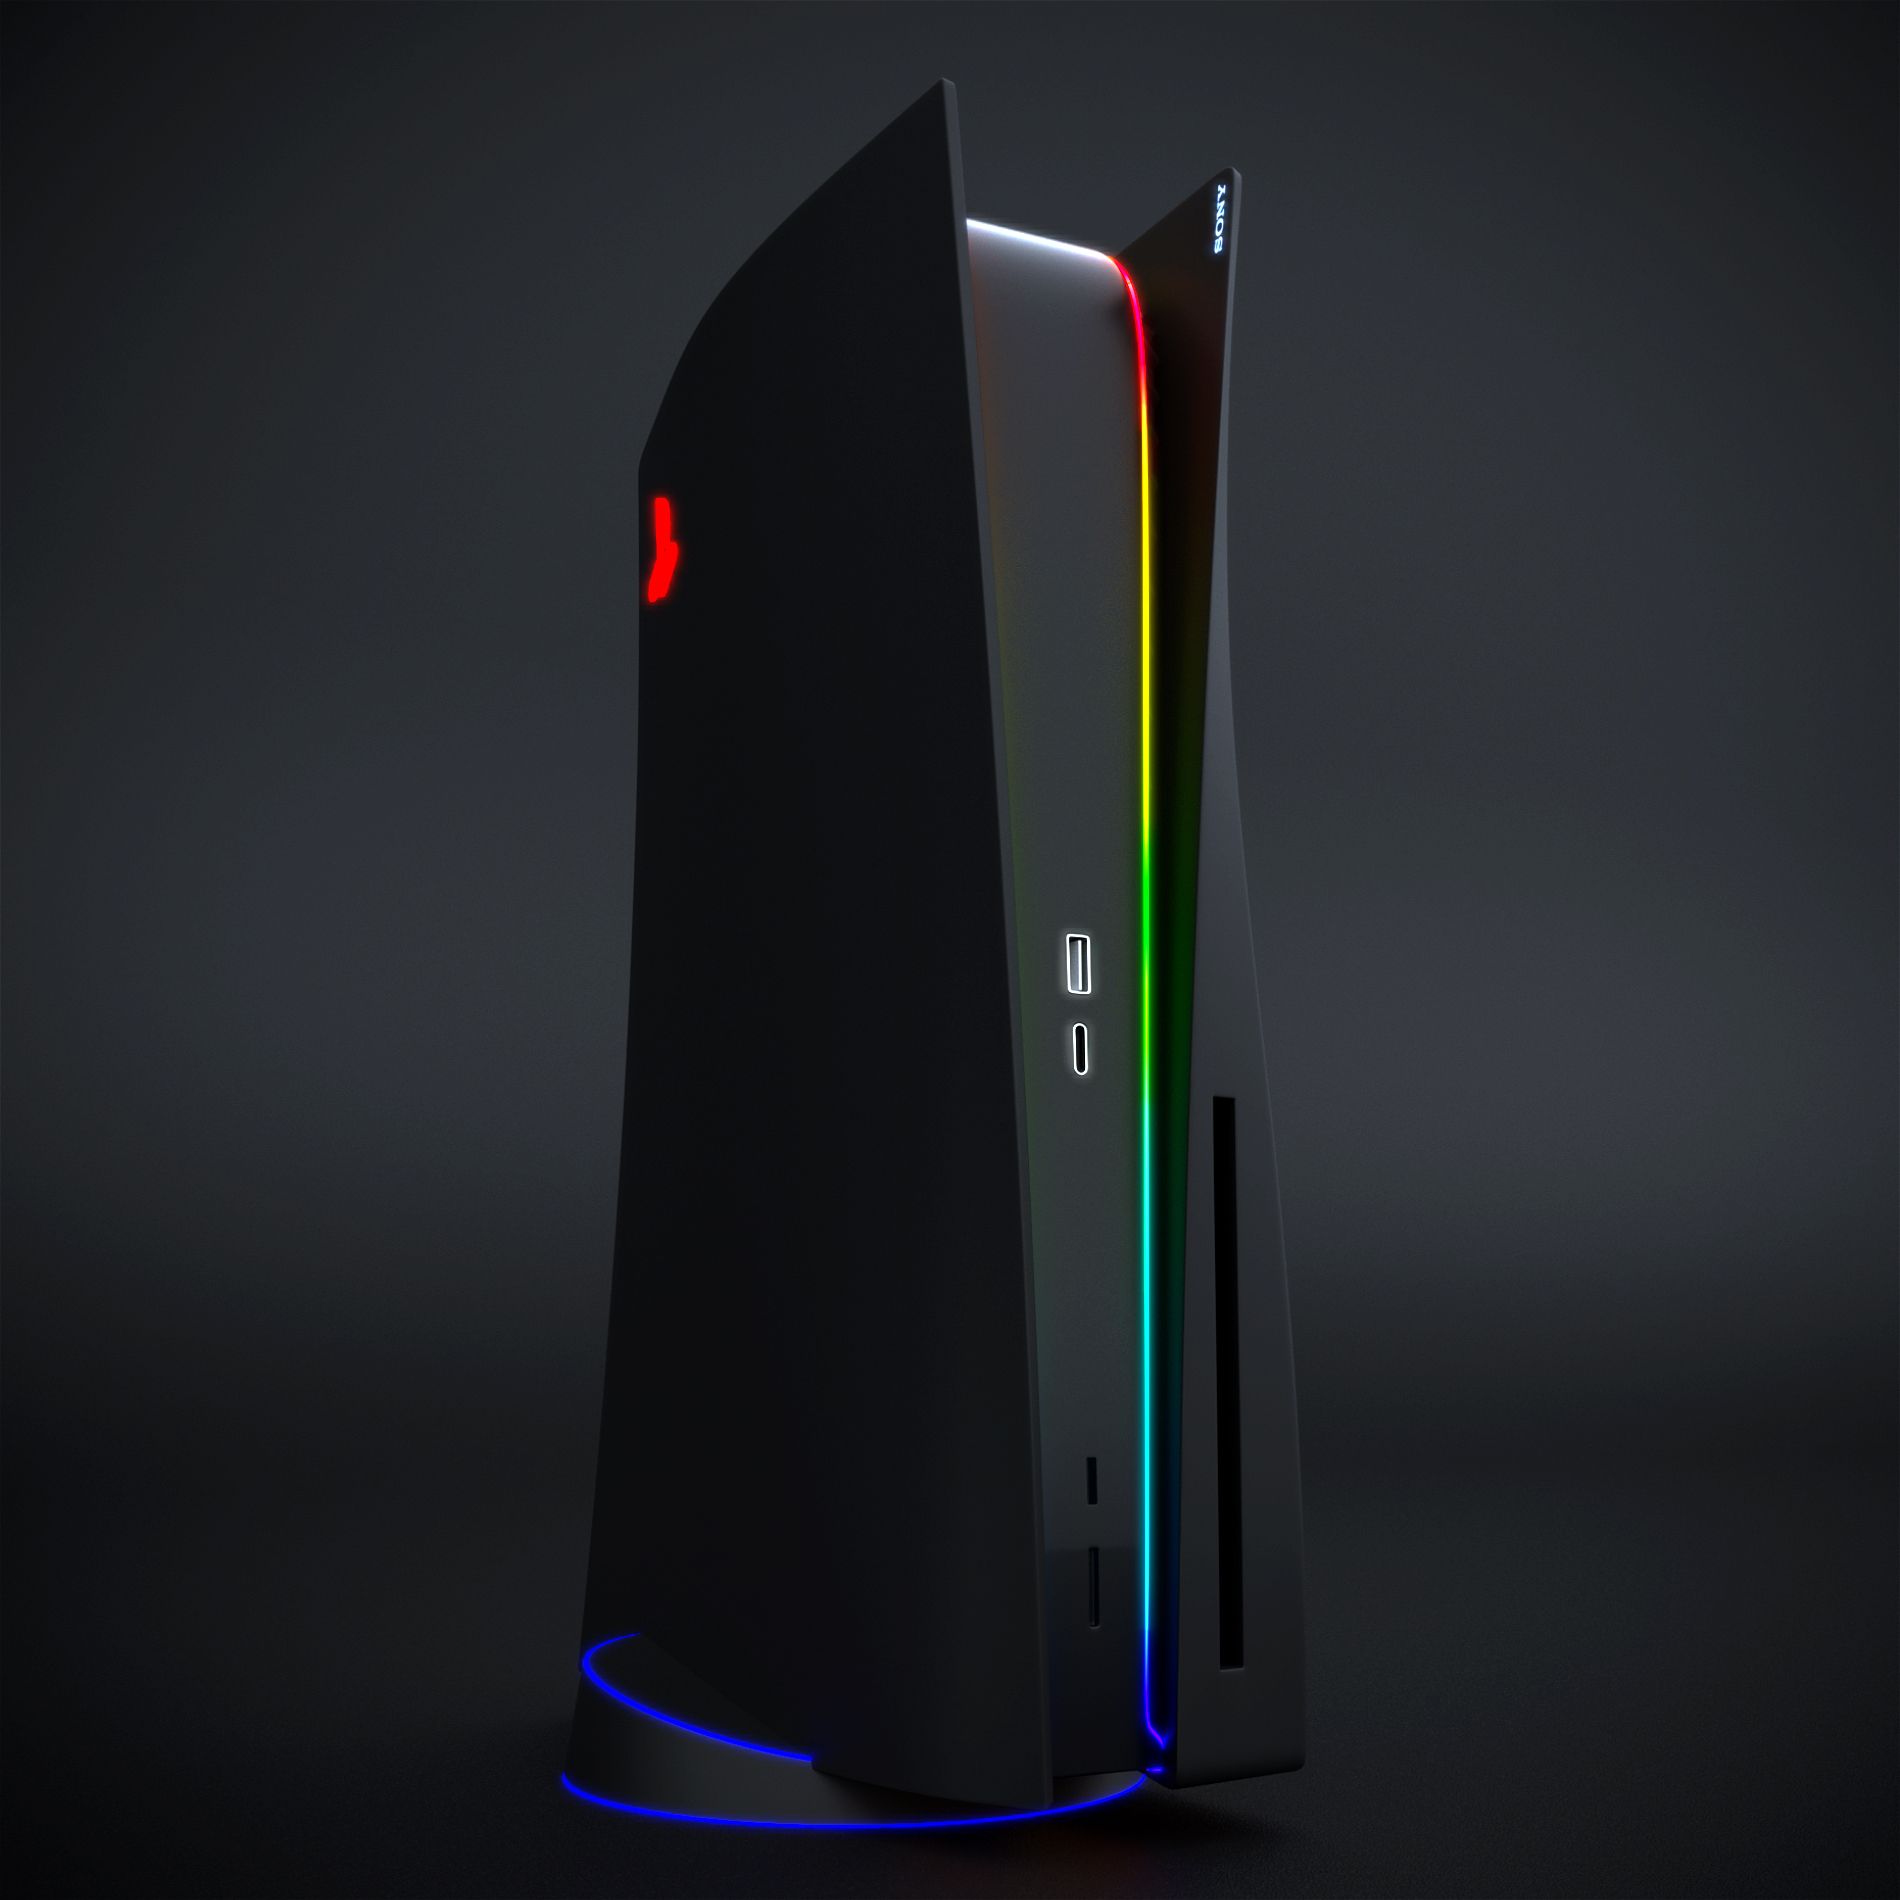 Чёрная PlayStation 5 с RGB-подсветкой | Источник: reddit.com/r/gaming